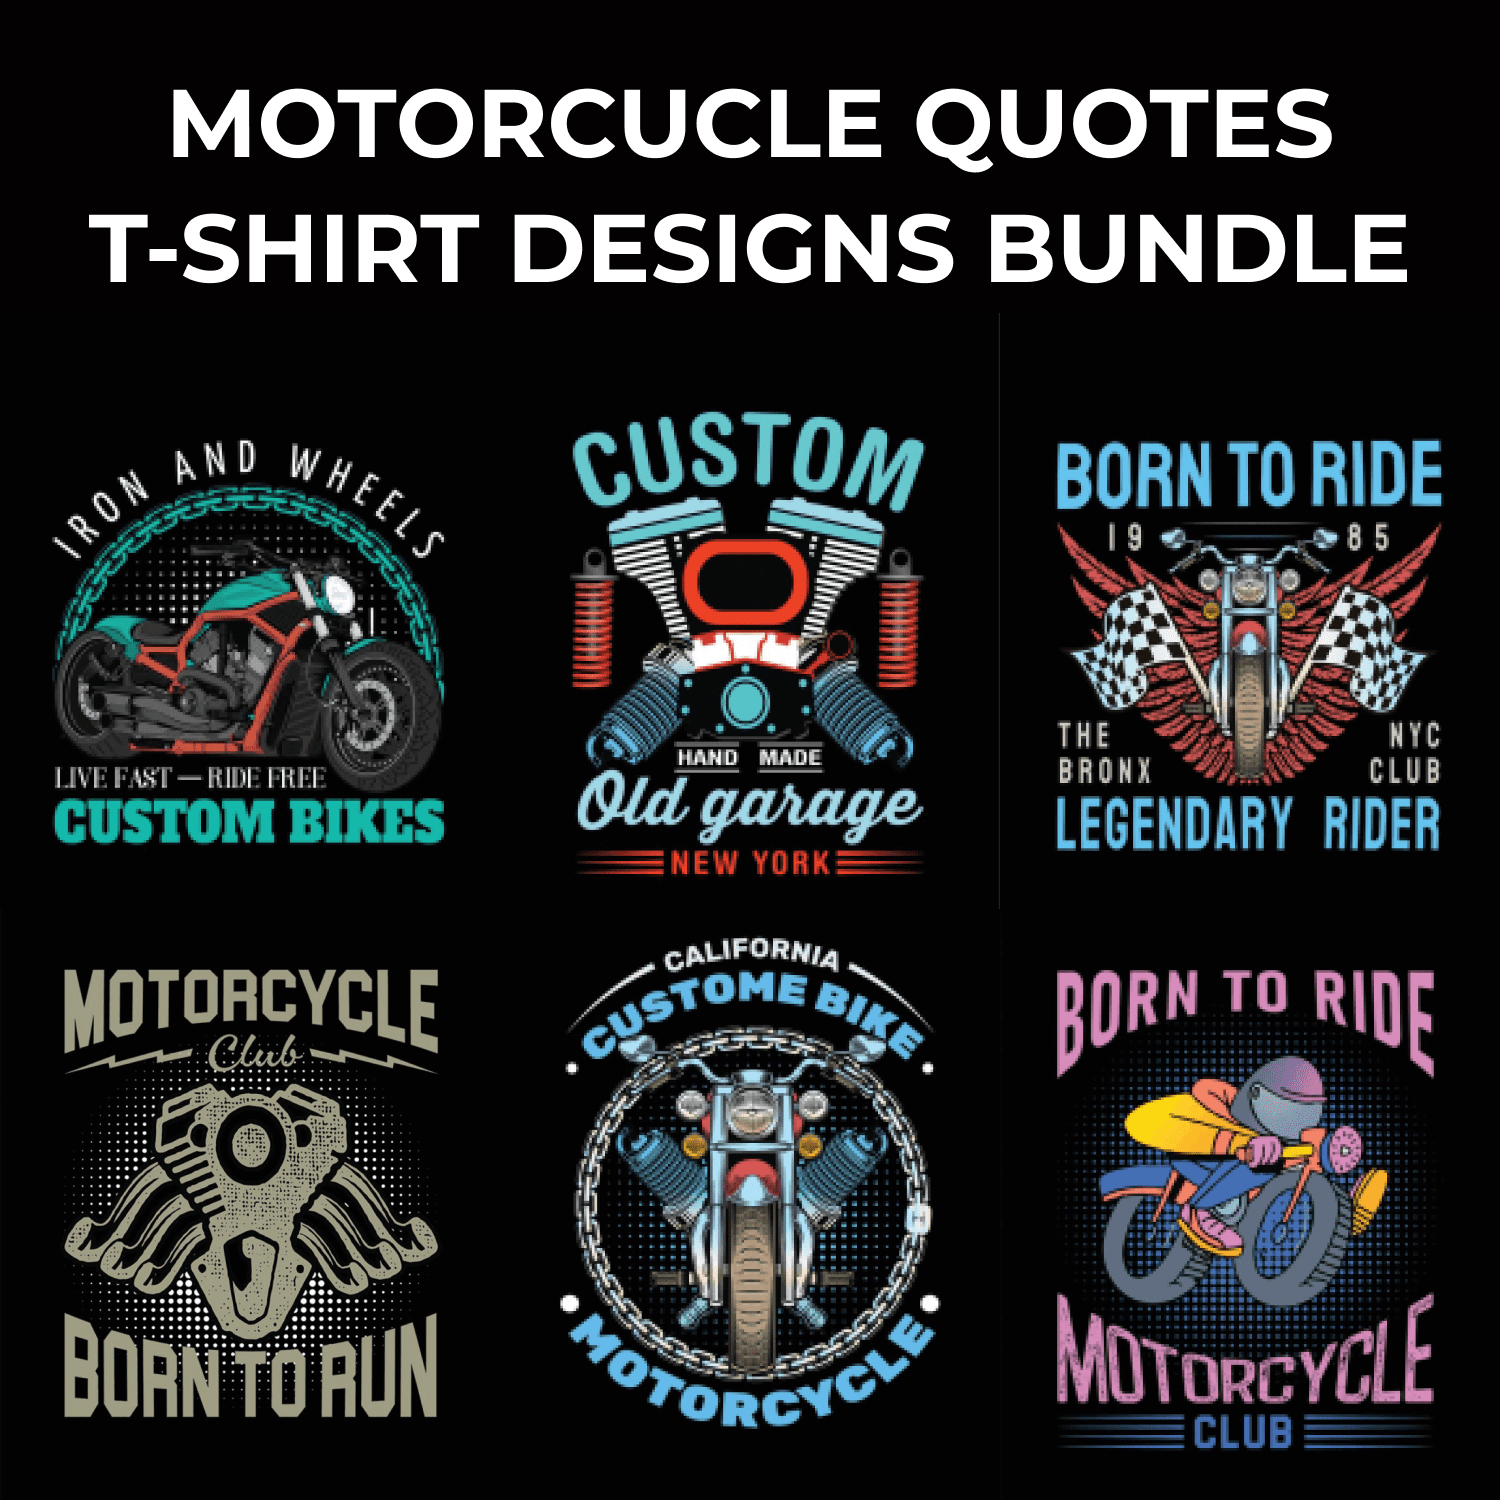 Motorcycle T-shirt Design Bundle by MasterBundles.